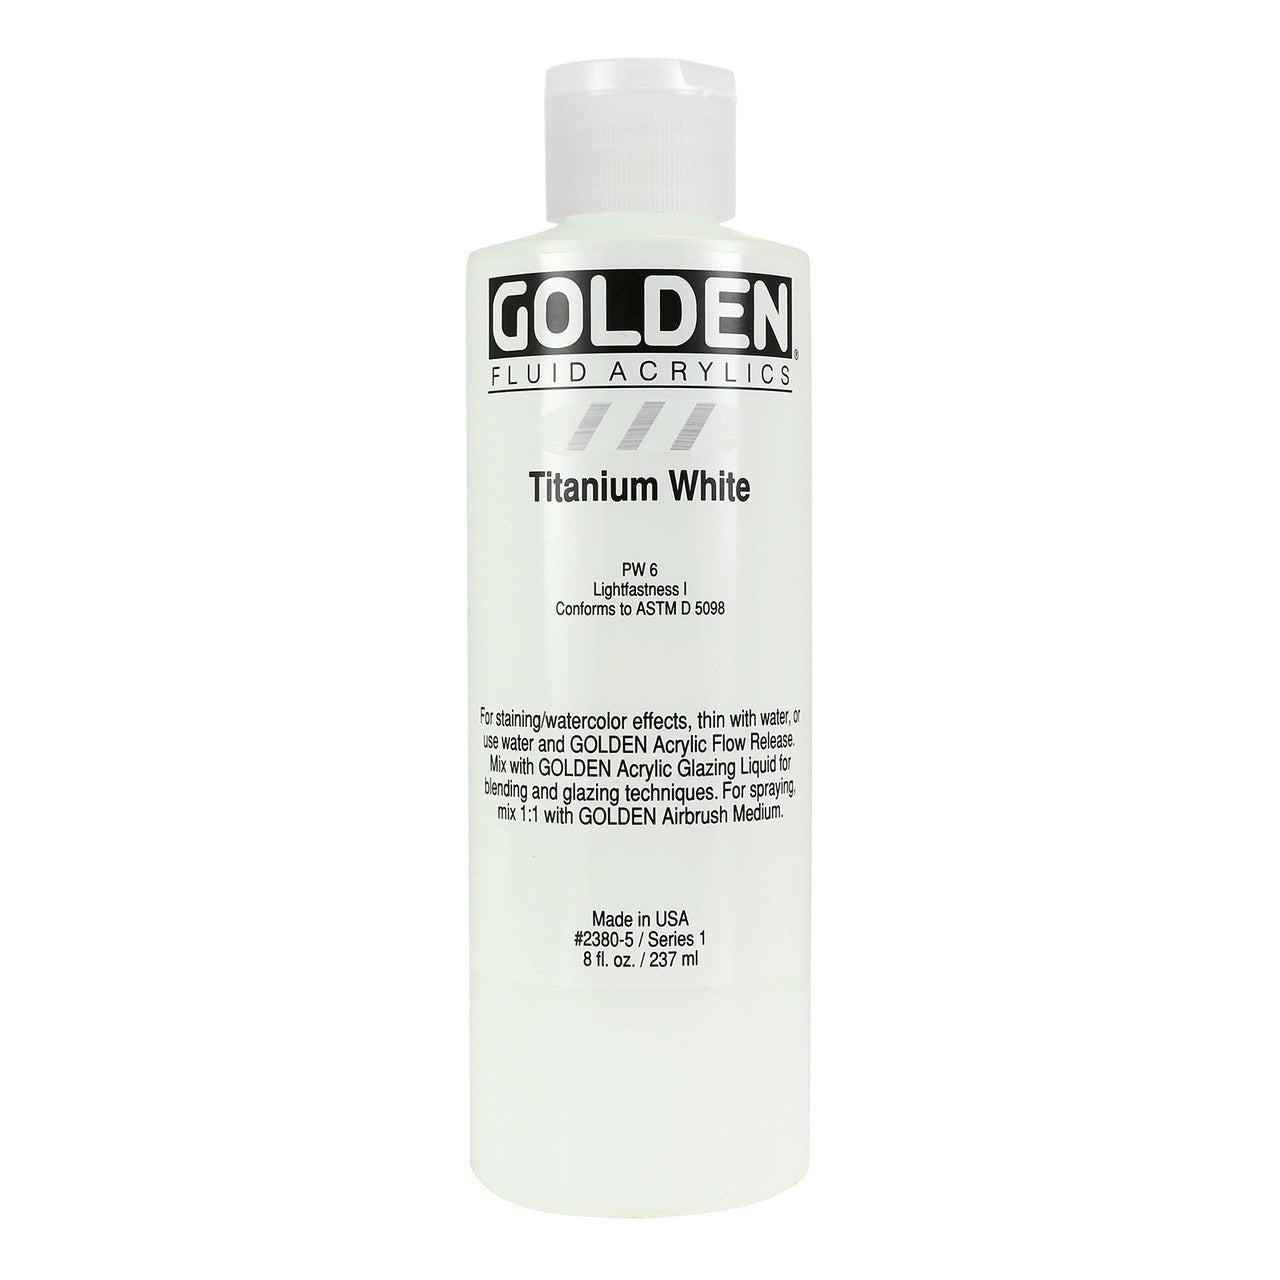 Golden Fluid Acrylic Titanium White 8 oz - merriartist.com